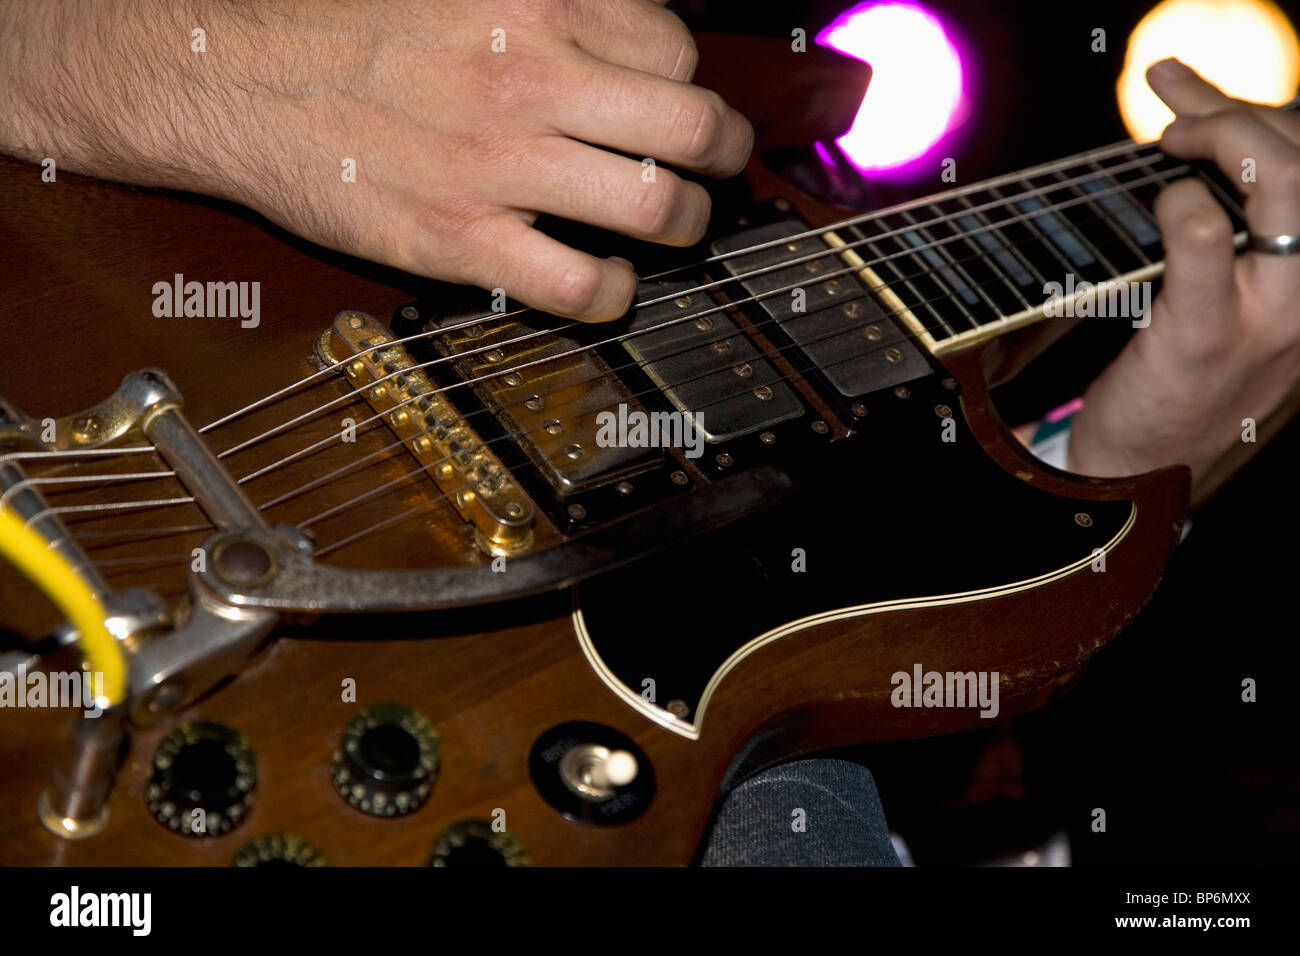 Un homme jouant d'une guitare électrique, Close up of hands Banque D'Images